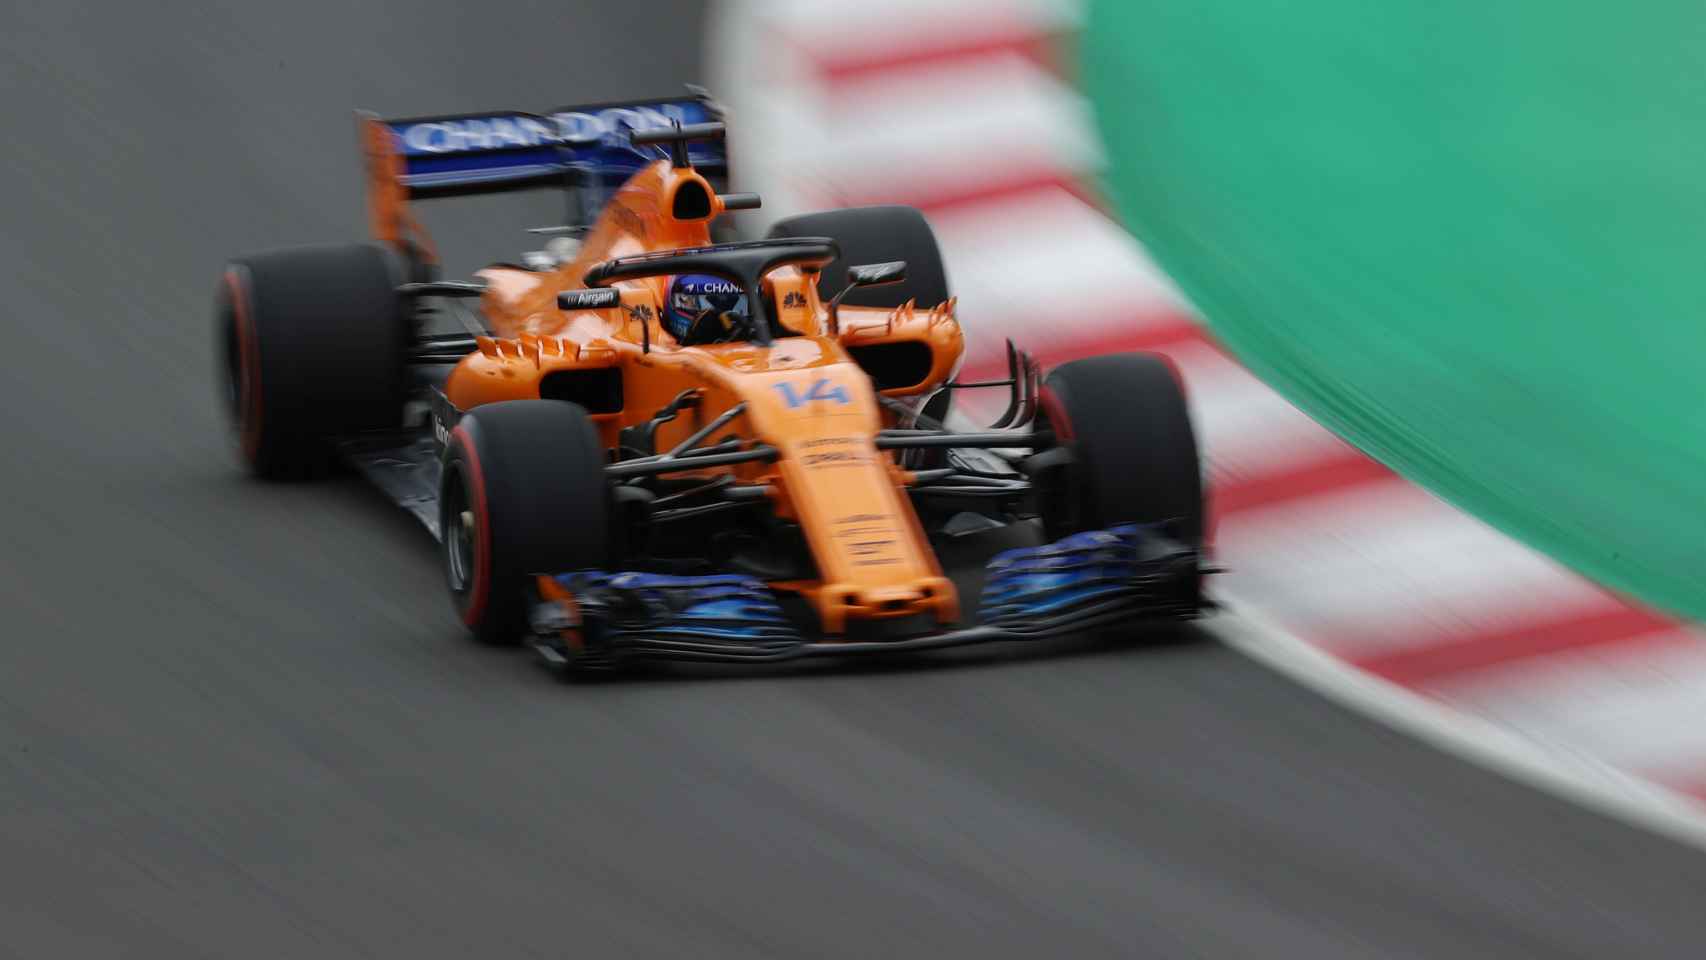 Fernando Alonso rueda con su McLaren - Reanault.